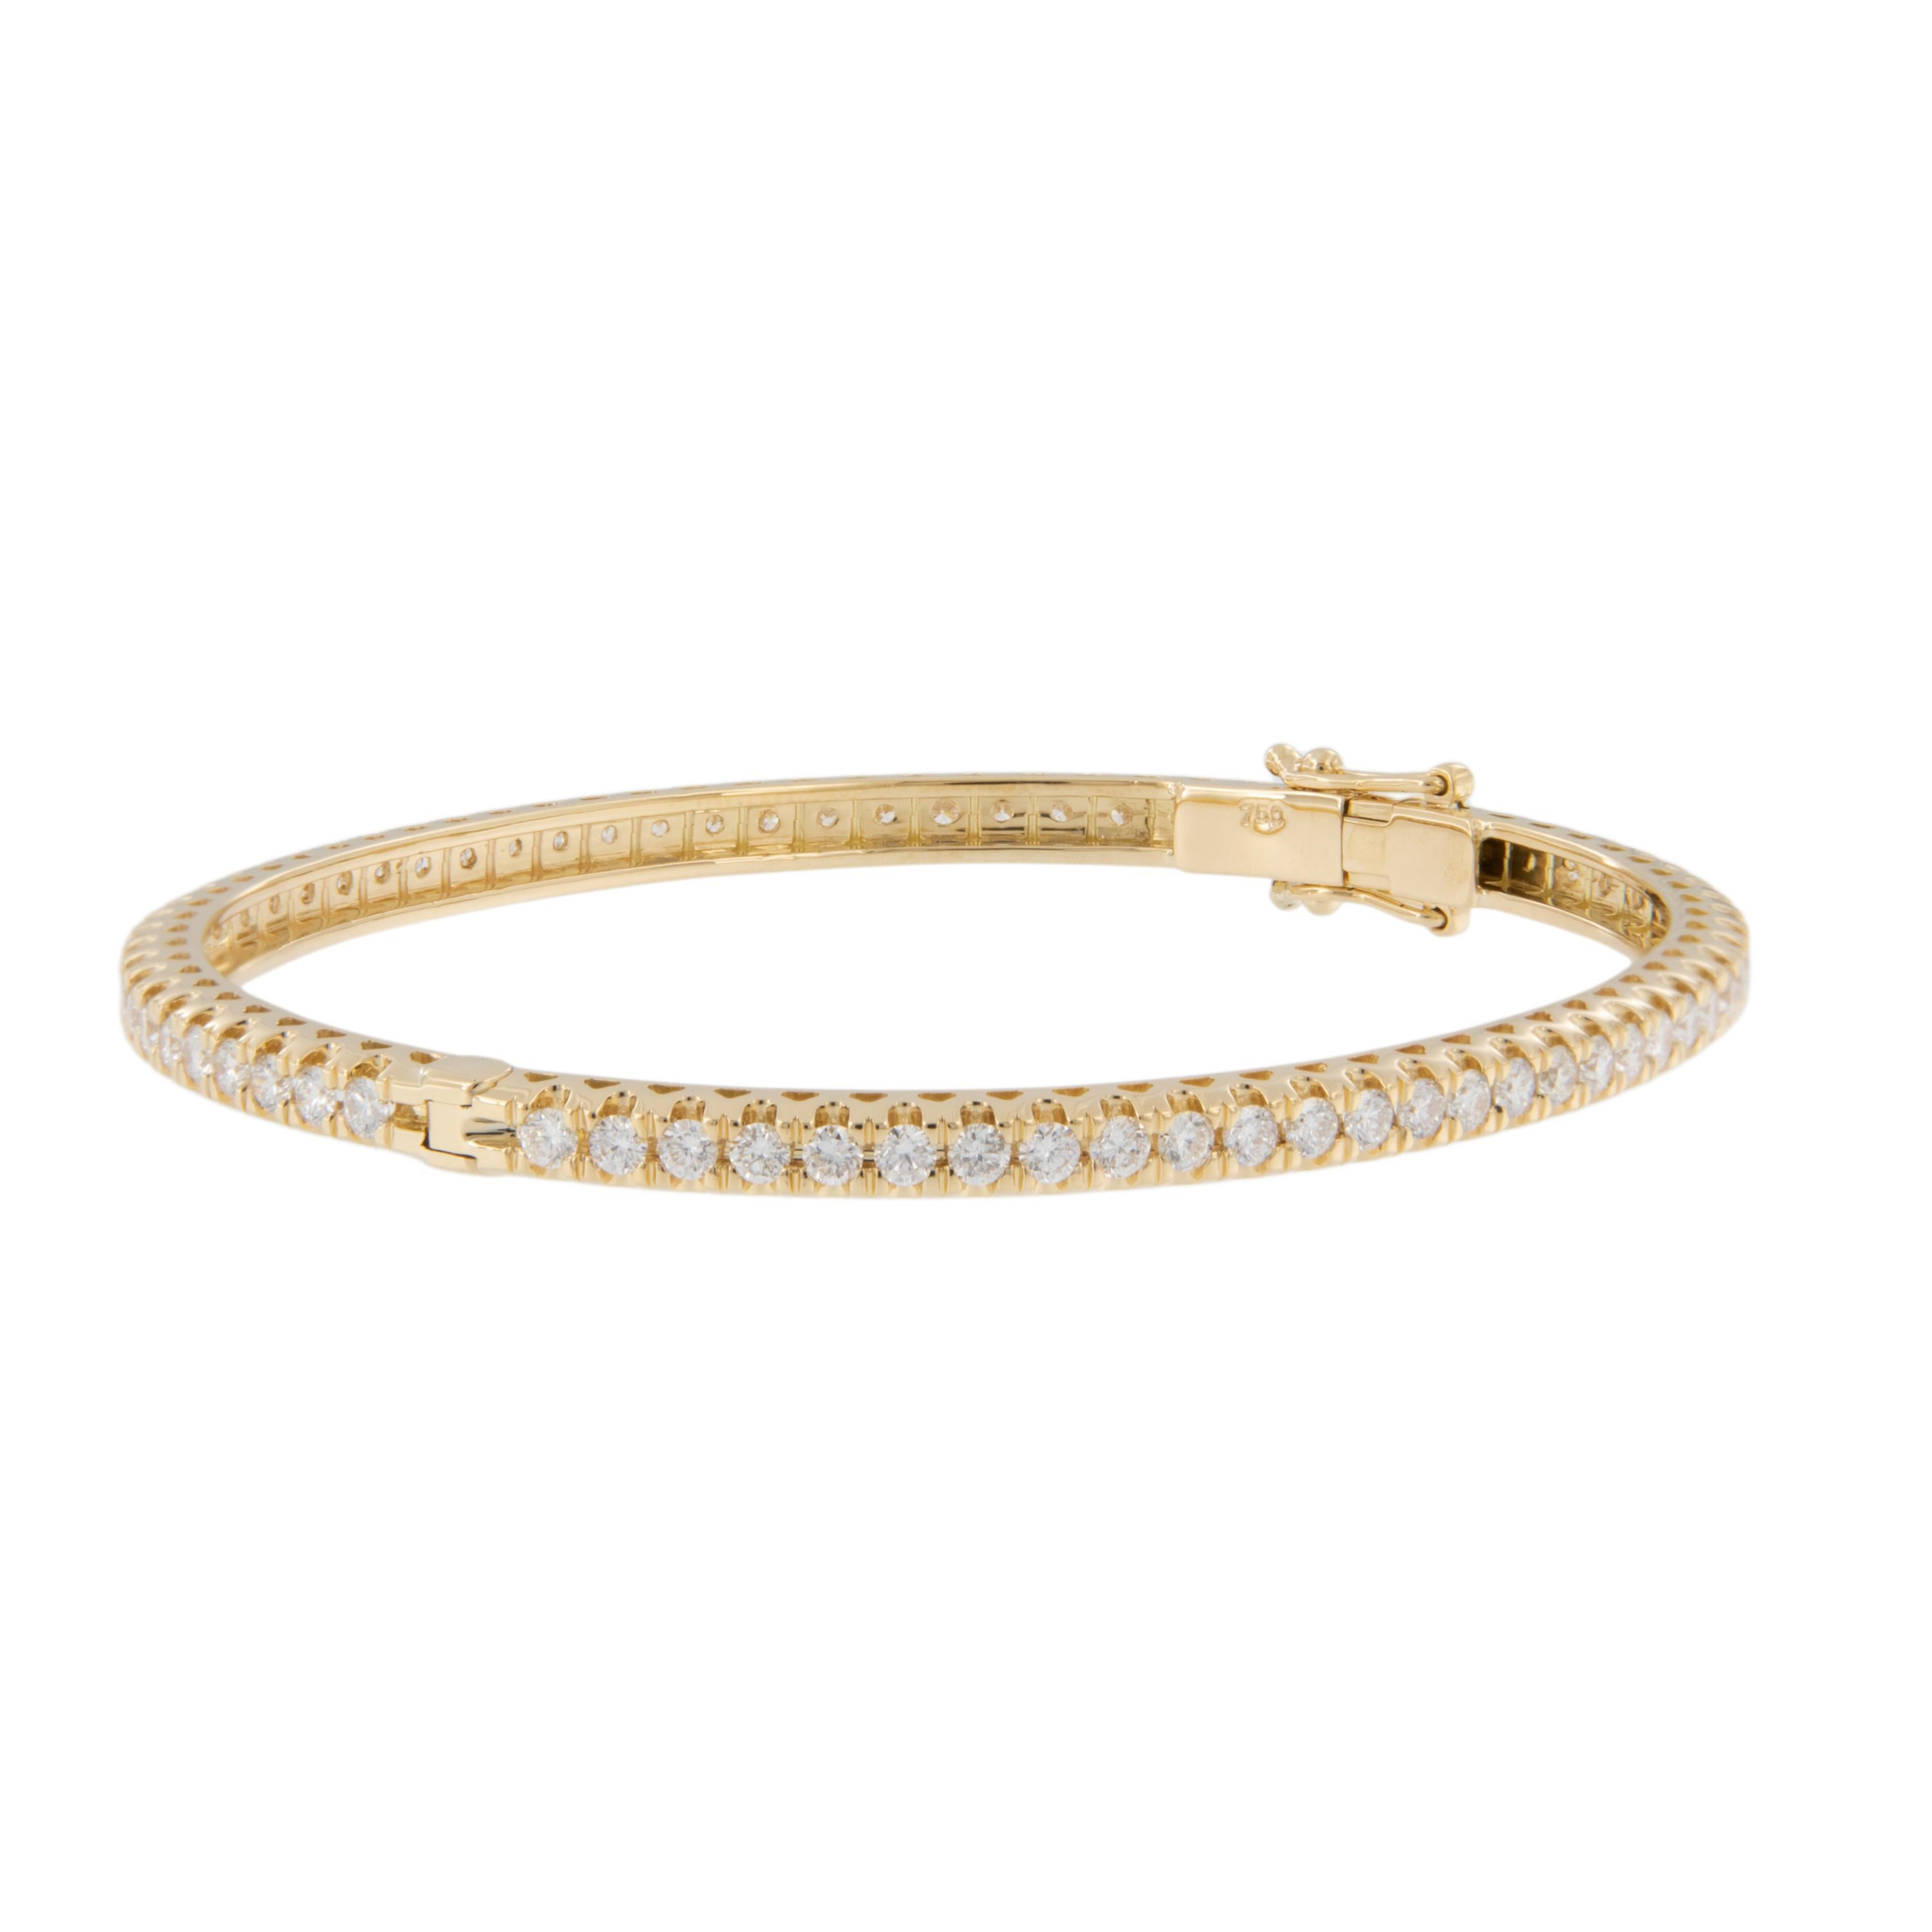 Il n'y a pas plus classique que ce bracelet bangle éternel en or jaune 18 carats avec diamants naturels VS - SI de 3,15 ctw. Ce bracelet est tout à fait à sa place sur votre poignet, que vous portiez un jean ou une robe noire.  Portée seule ou